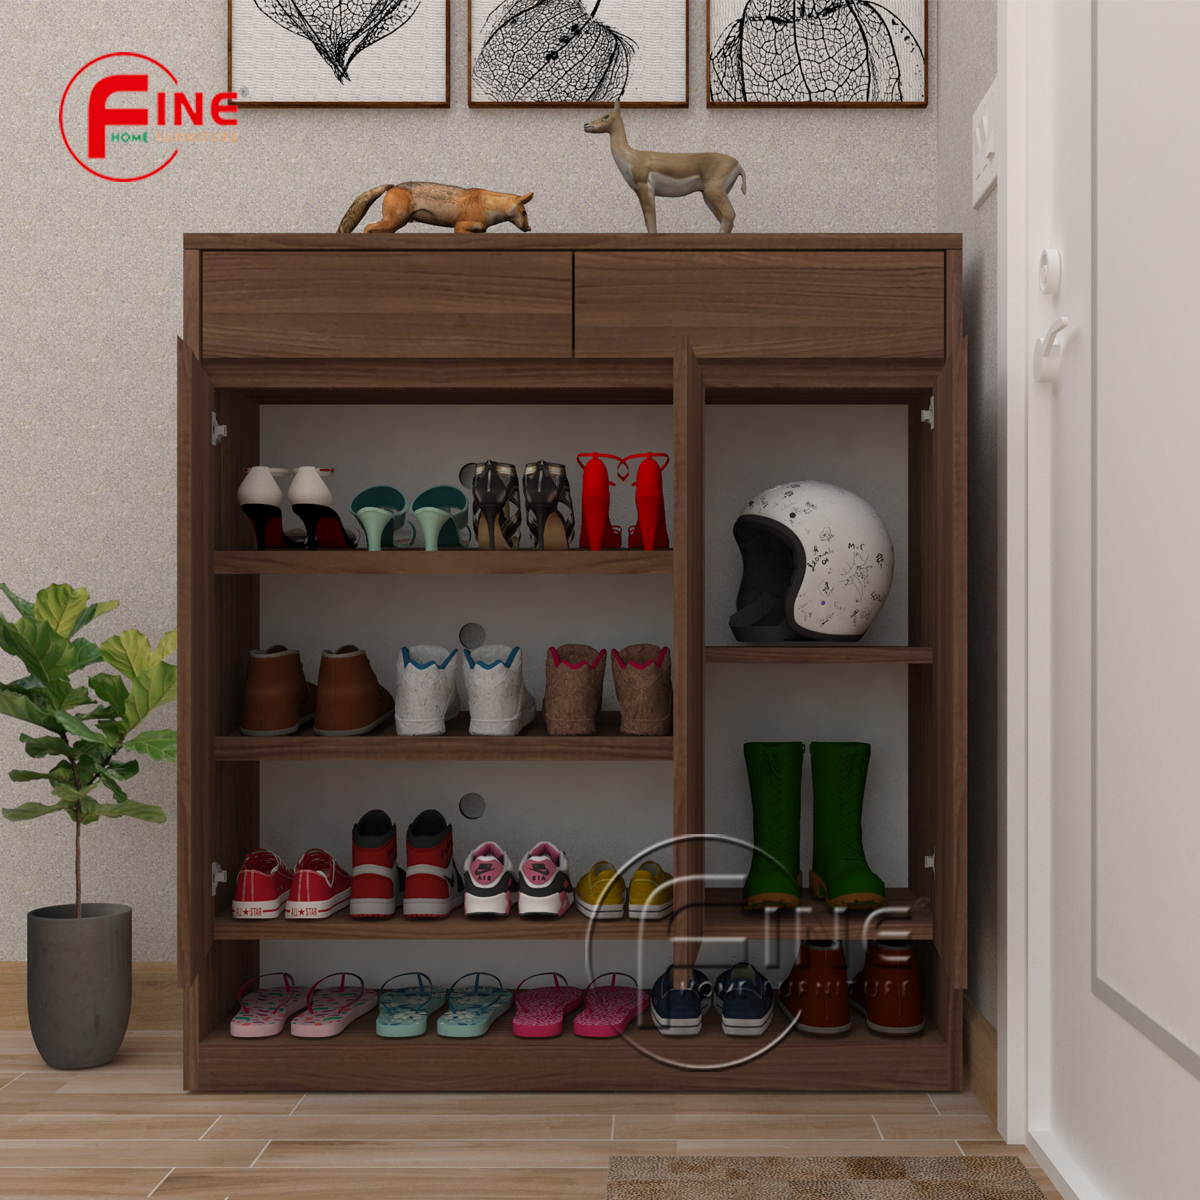 Tủ Giày Dép FINE hiện đại sang trọng phong cách thời trang FTG014 phù hợp cho Căn Hộ, Nhà Phố